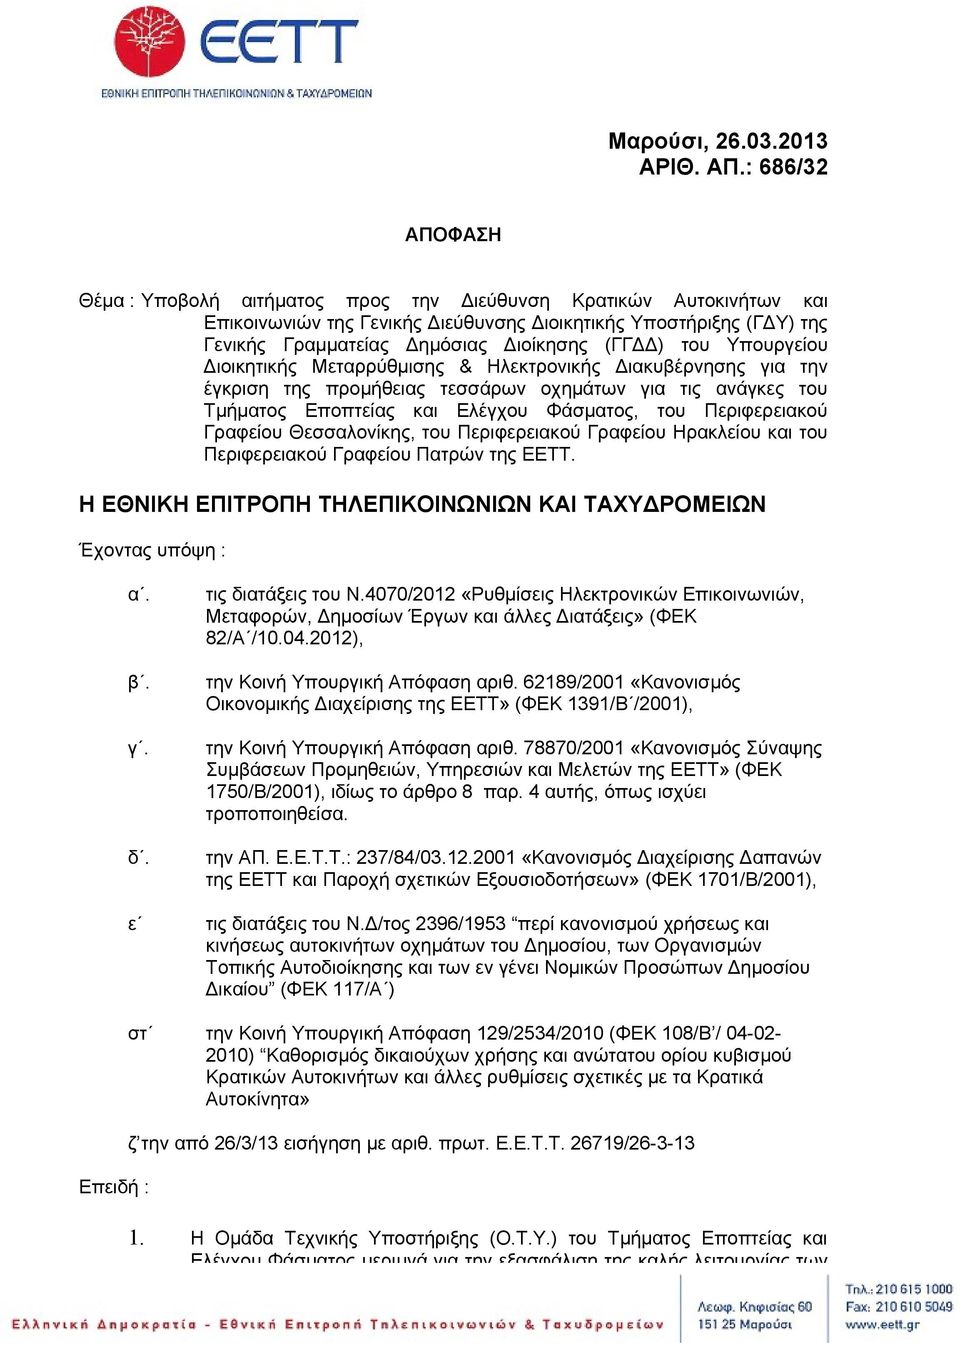 (ΓΓΔΔ) του Υπουργείου Διοικητικής Μεταρρύθμισης & Ηλεκτρονικής Διακυβέρνησης για την έγκριση της προμήθειας τεσσάρων οχημάτων για τις ανάγκες του Τμήματος Εποπτείας και Ελέγχου Φάσματος, του